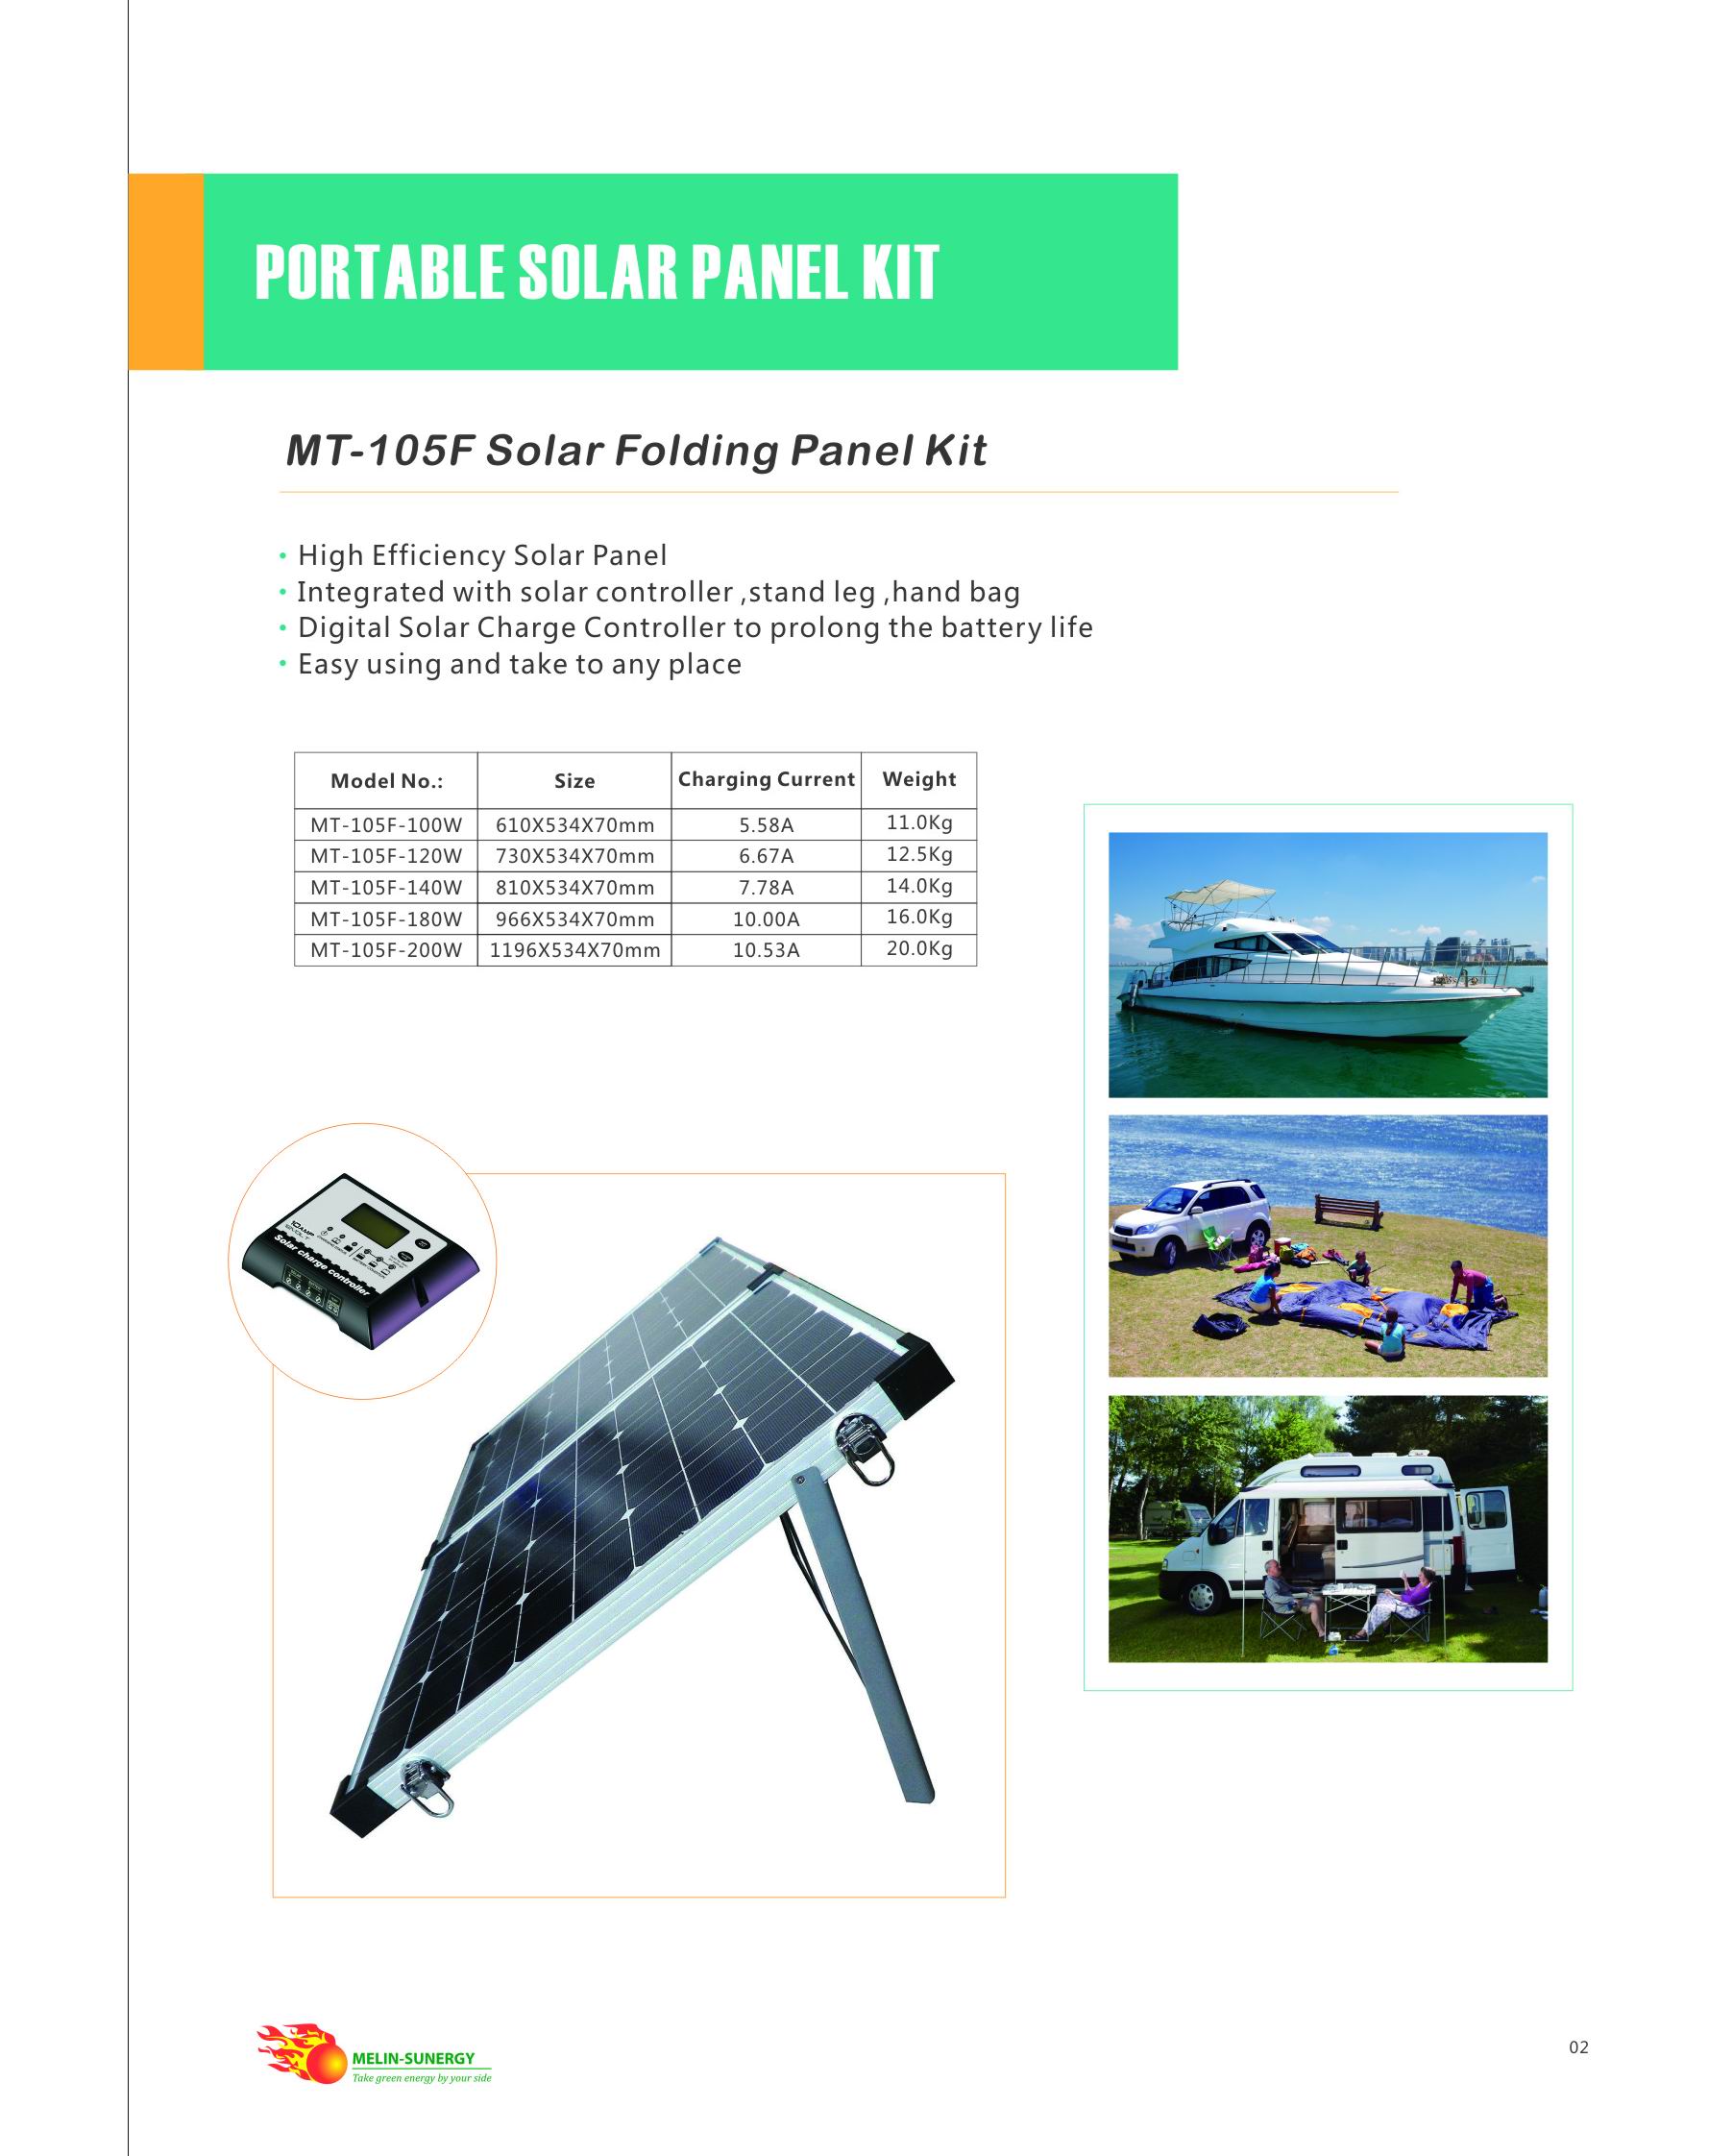 Portable Folding Panel Kit